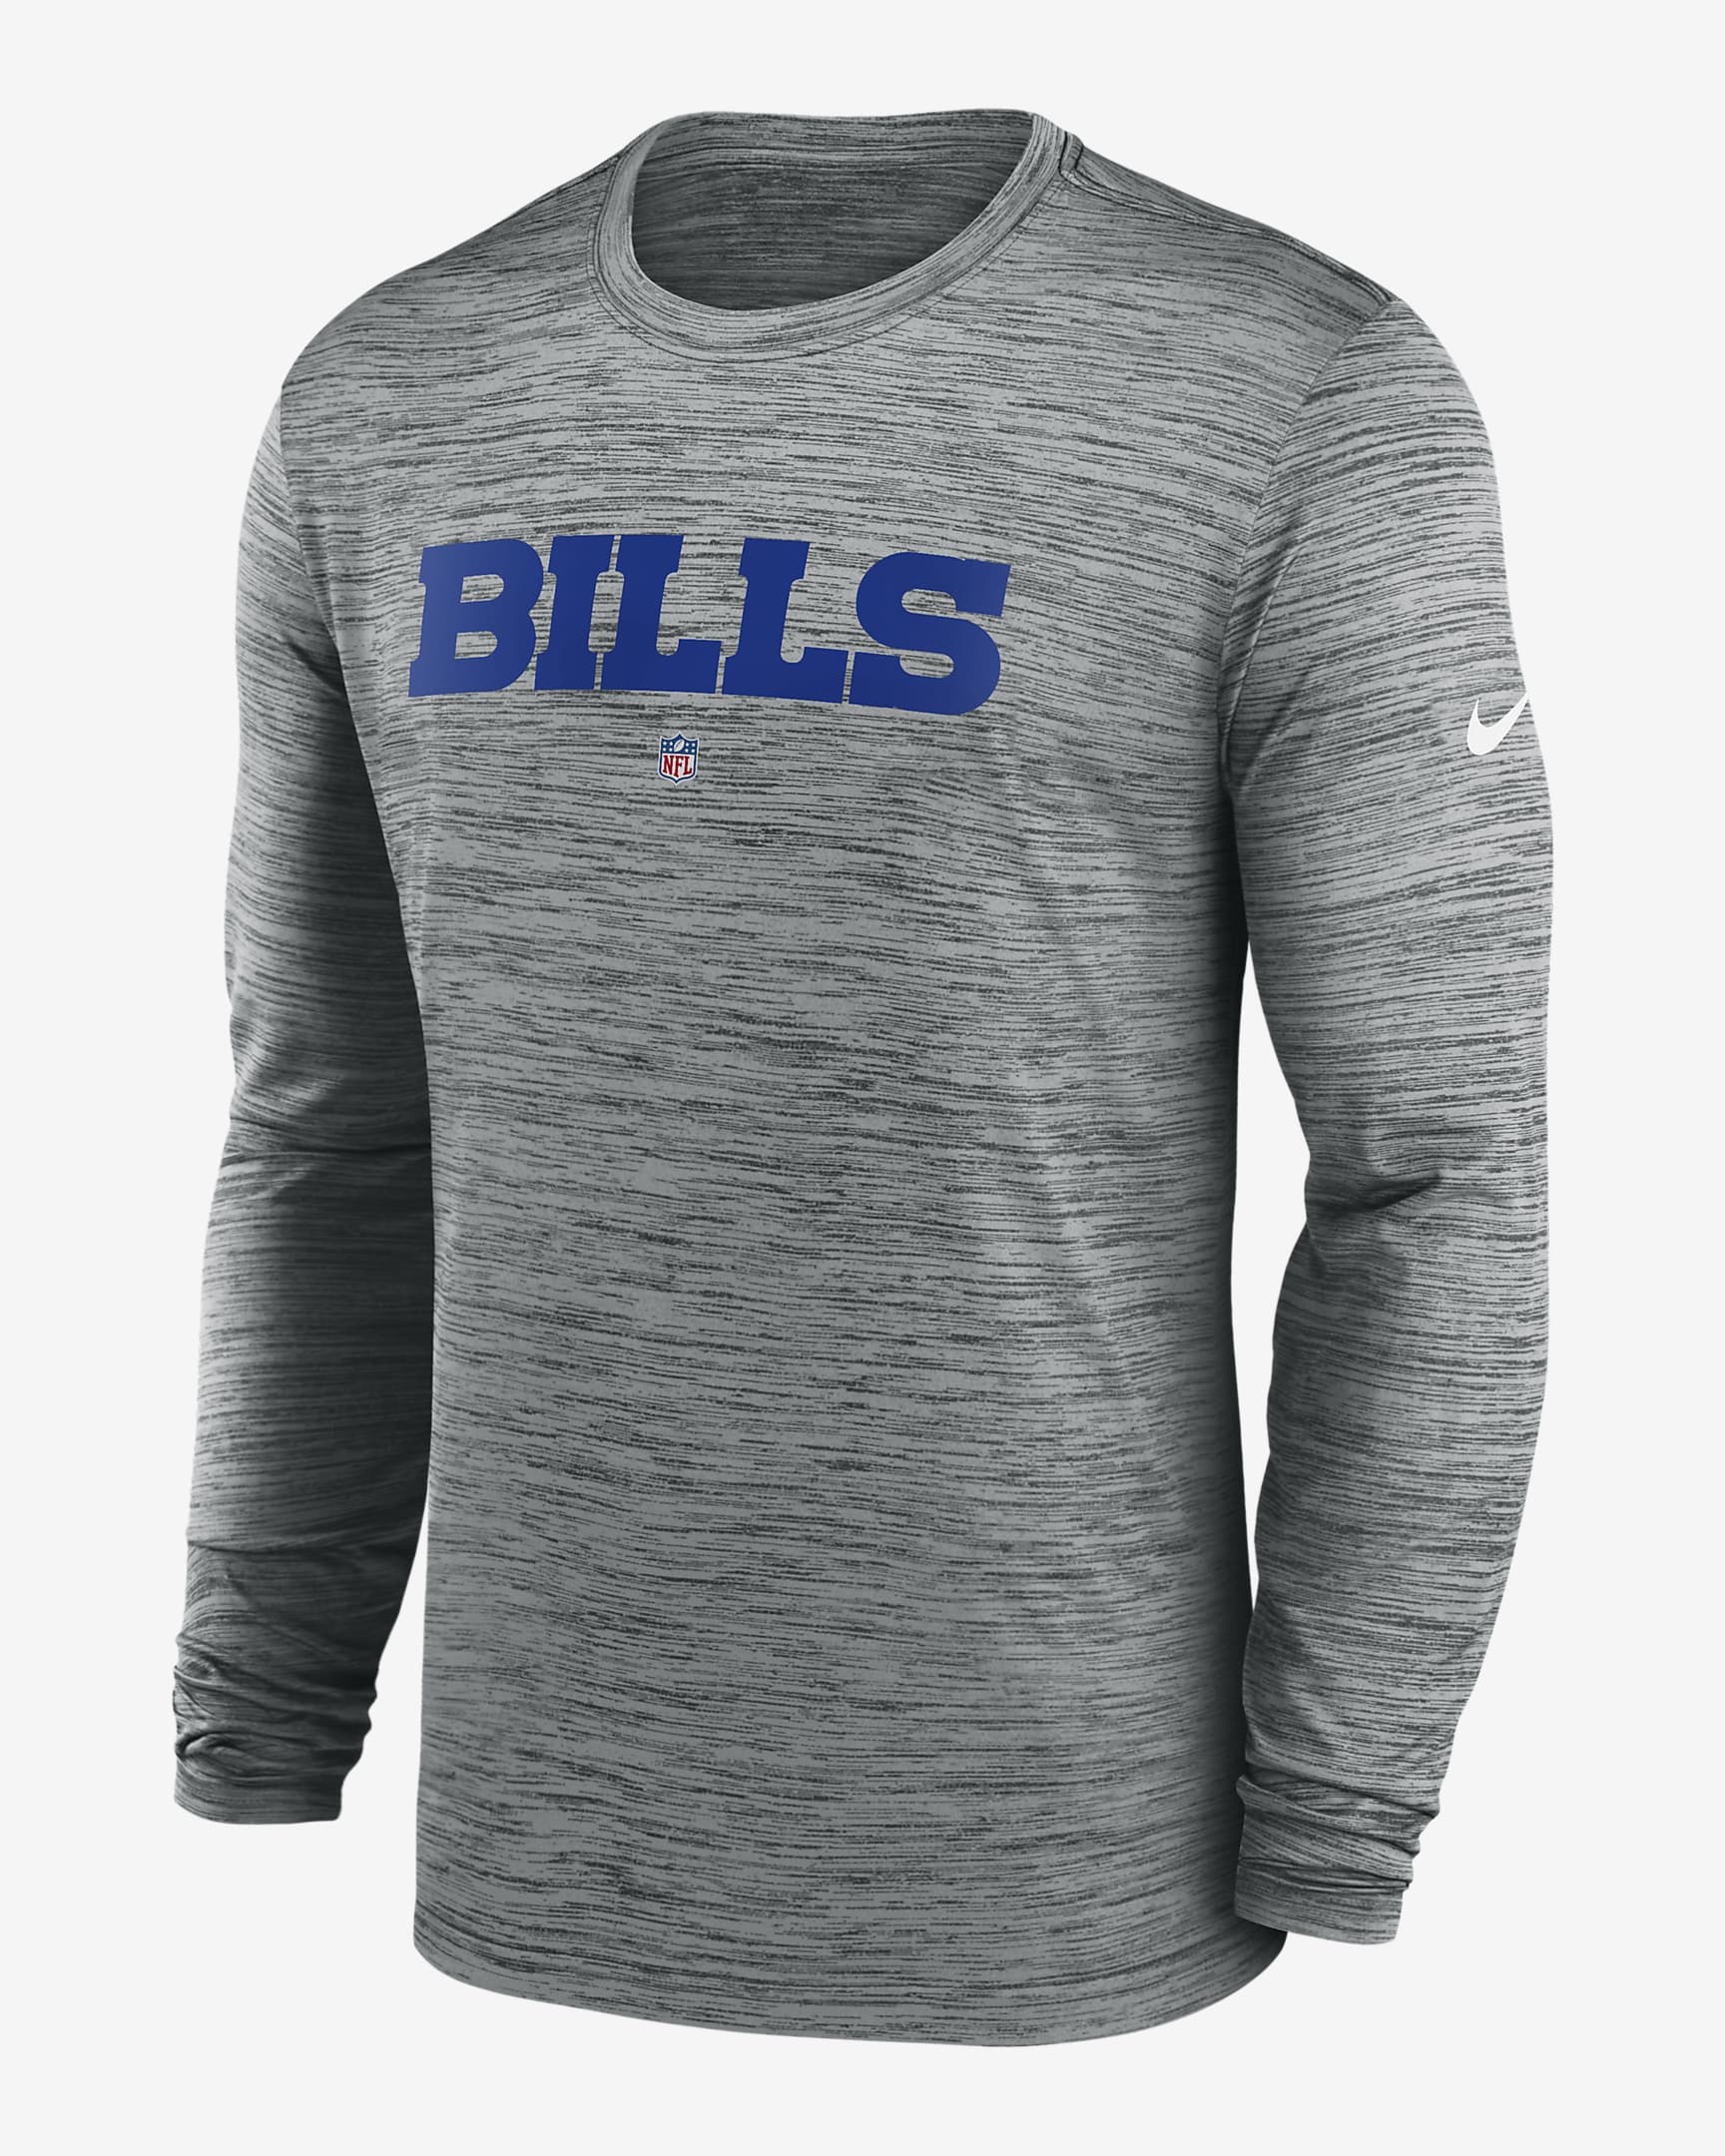 Nike Dri-FIT Sideline Velocity (NFL Buffalo Bills) Men's Long-Sleeve T ...